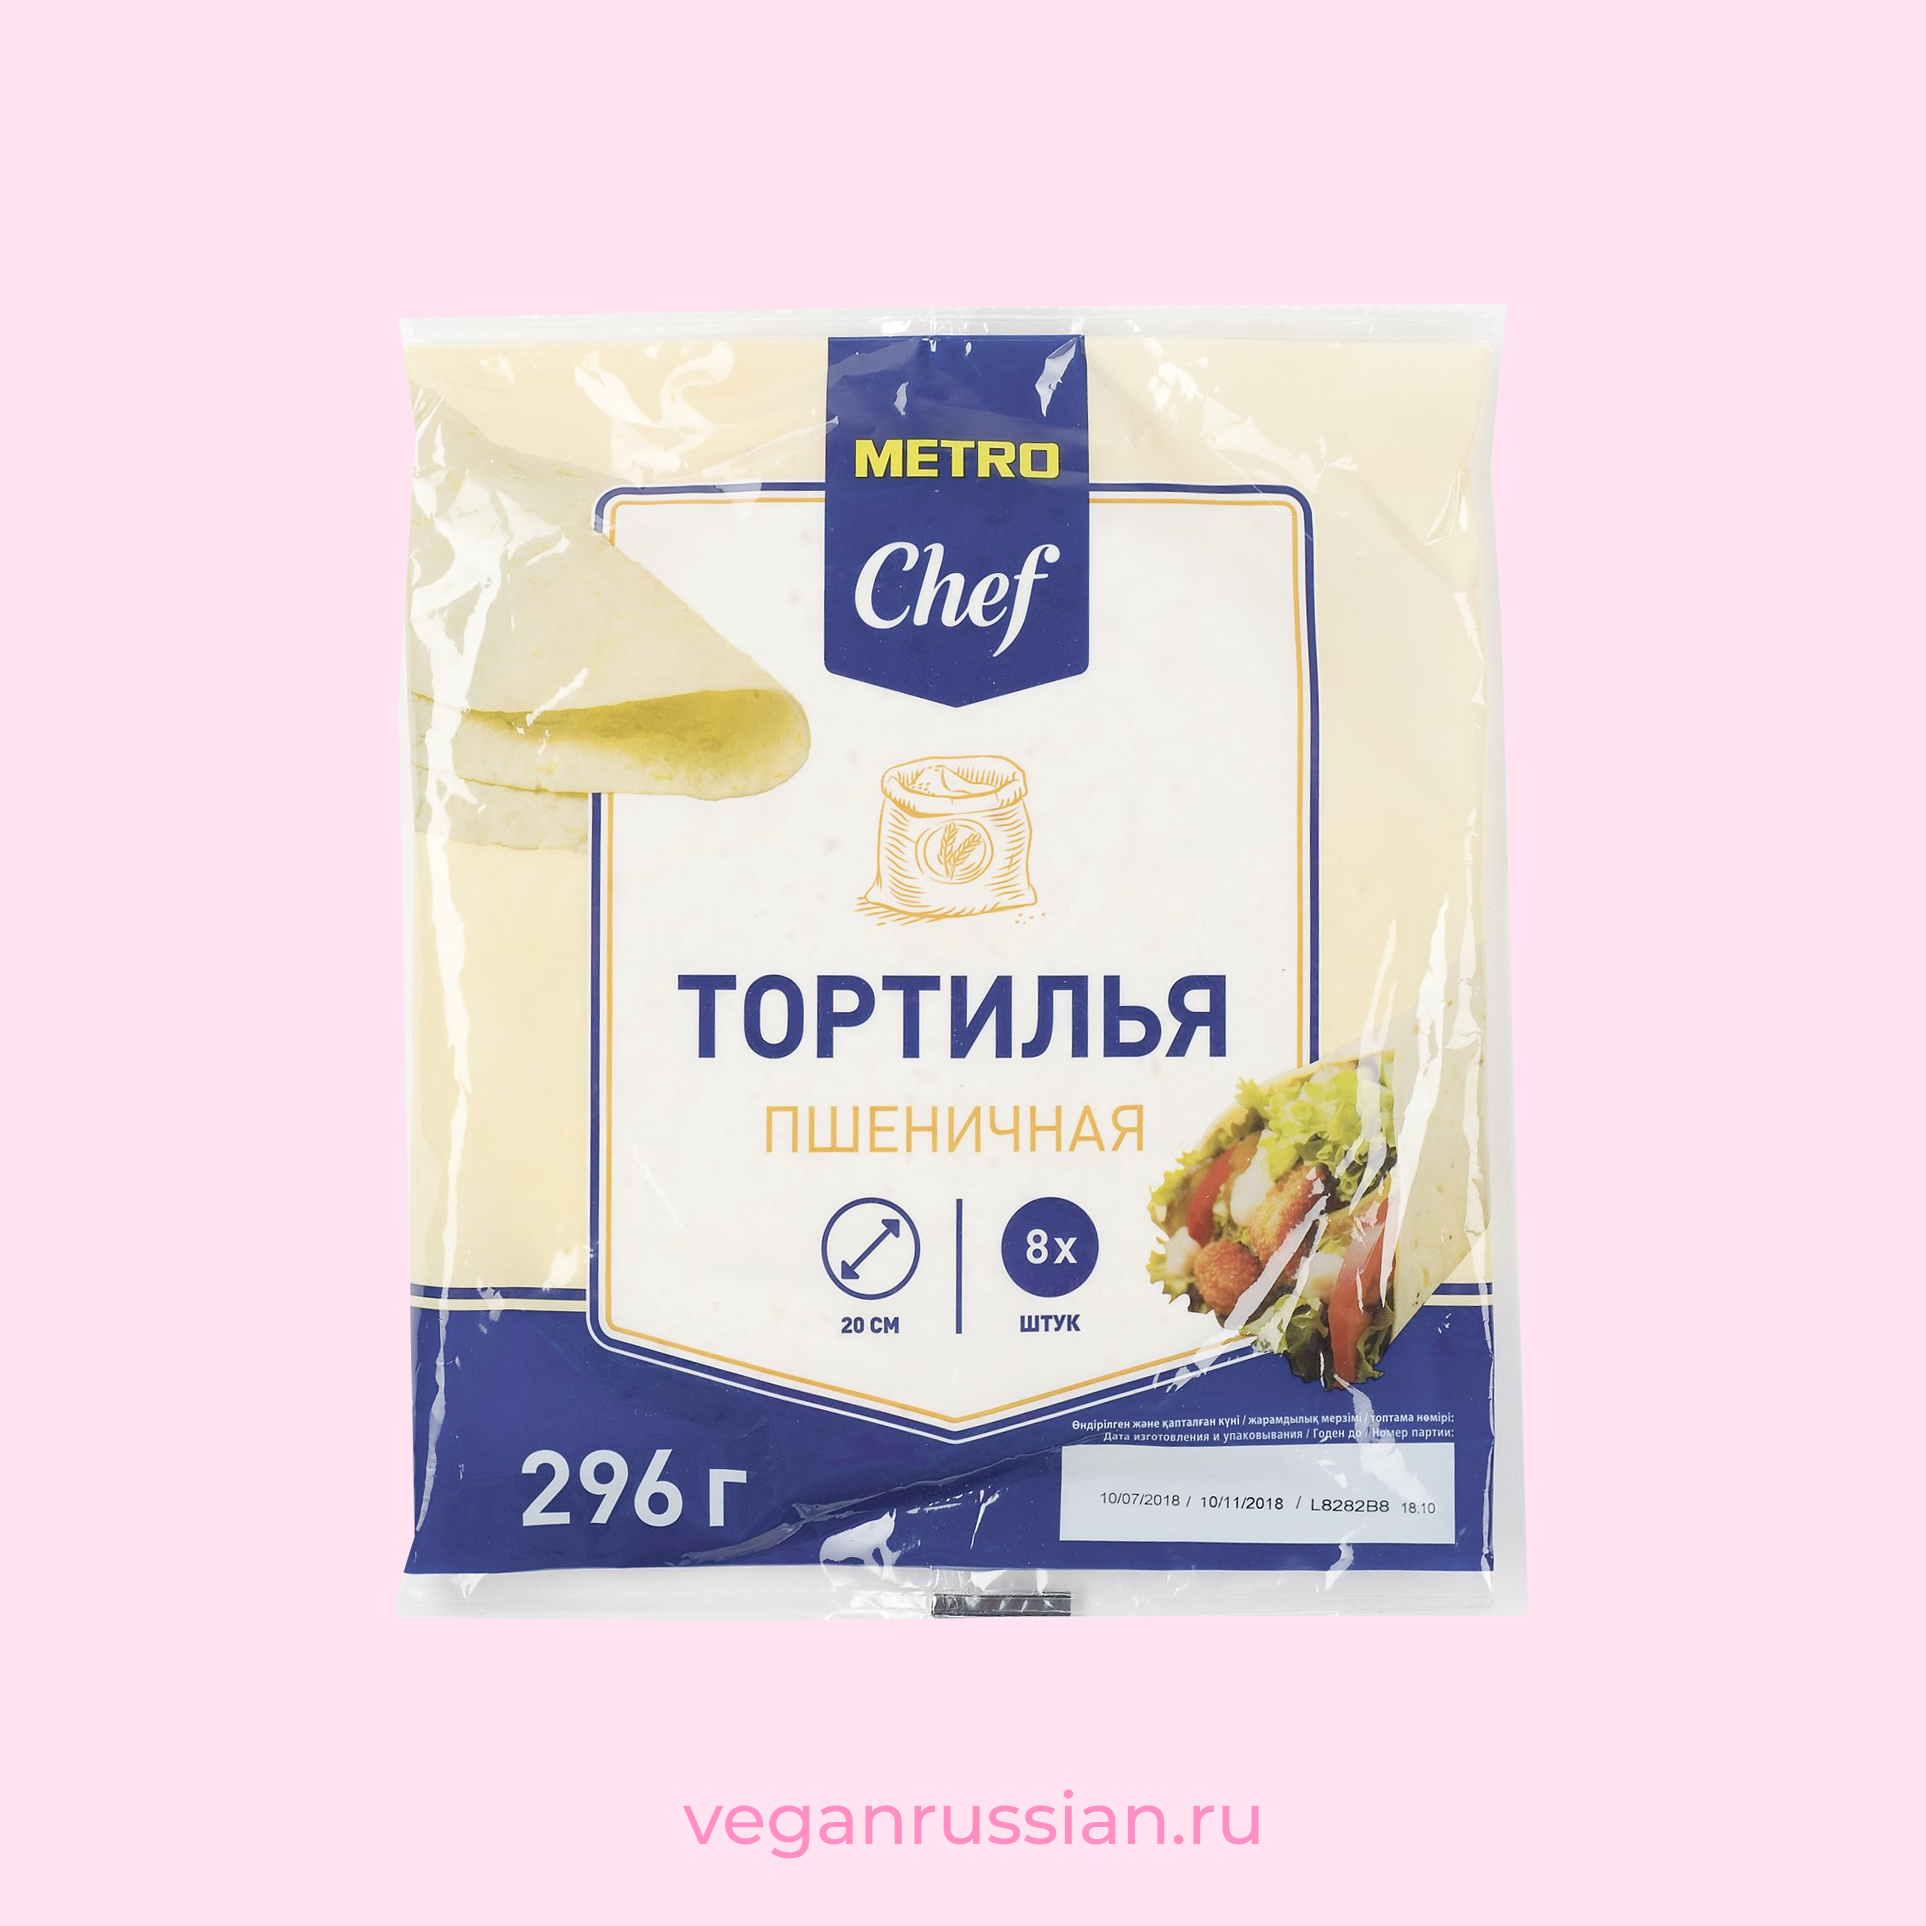 Тортилья пшеничная Metro Chef 20 см 8 шт